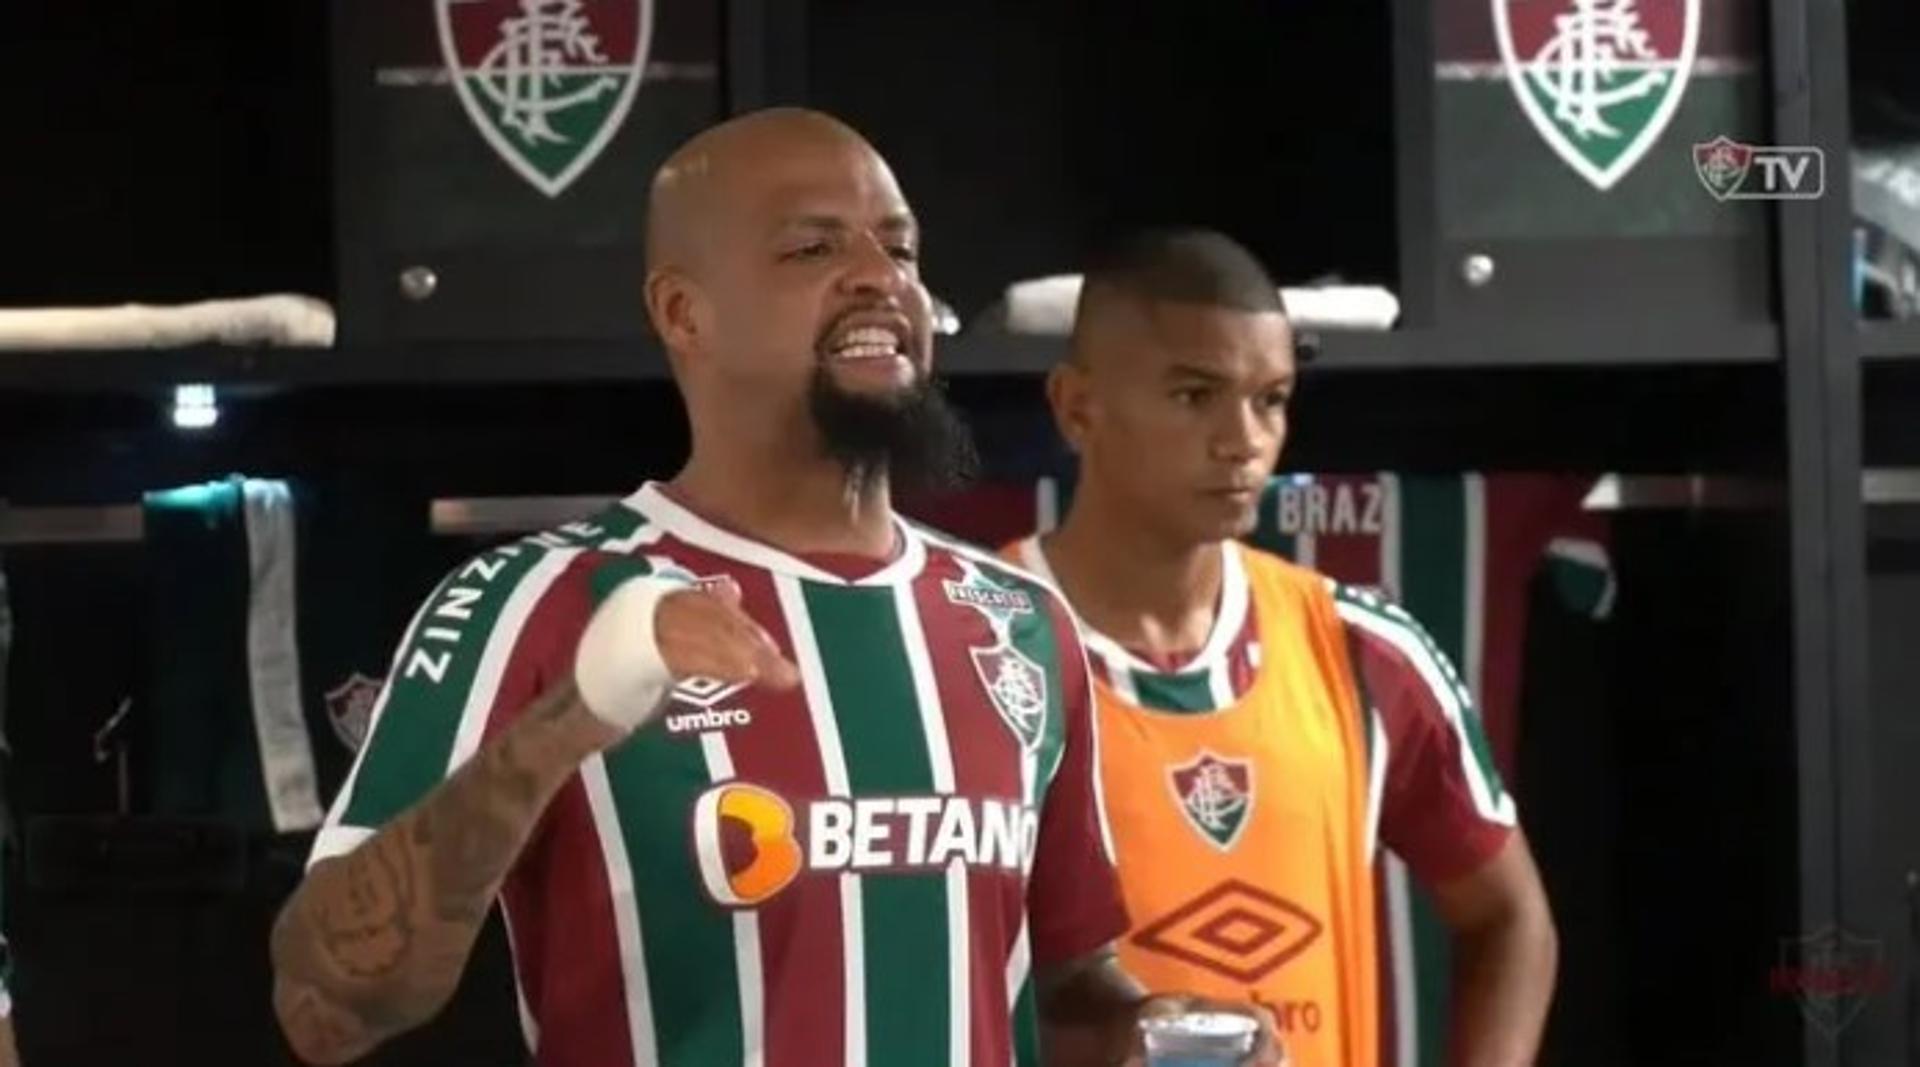 Felipe Melo - Fluminense